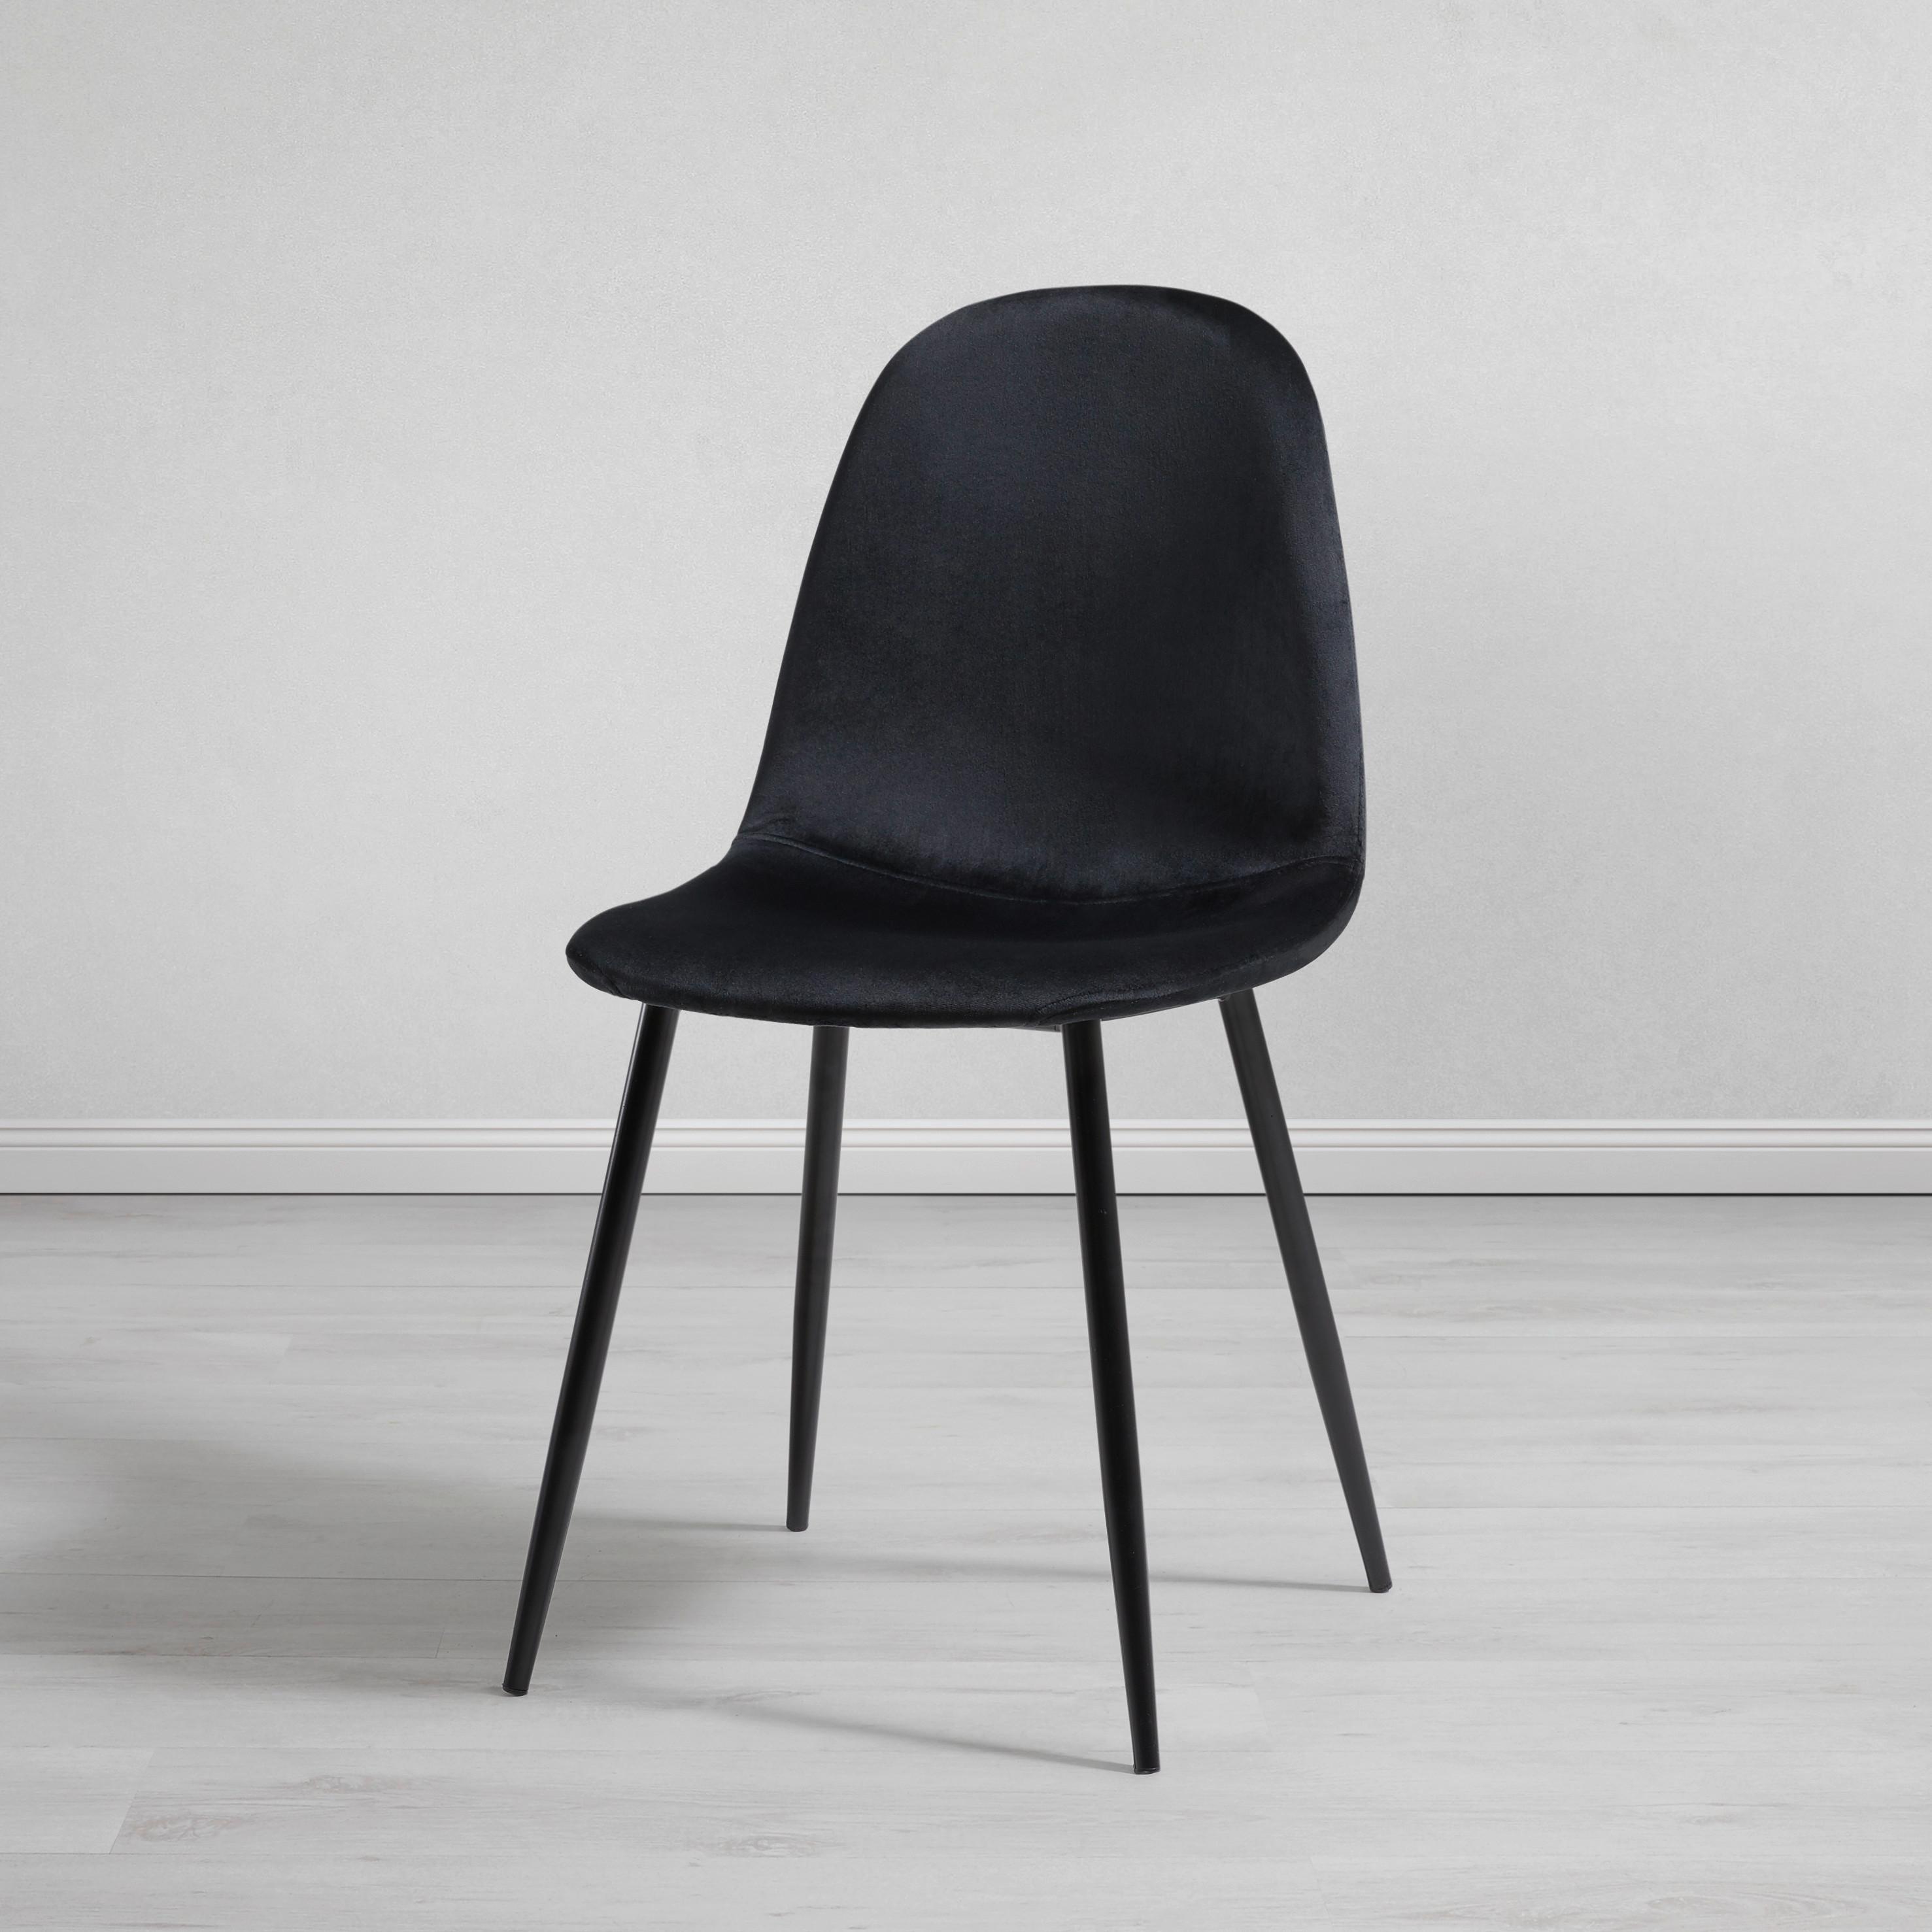 Židle Lio - černá, Moderní, kov/dřevo (43/86/55cm) - Modern Living